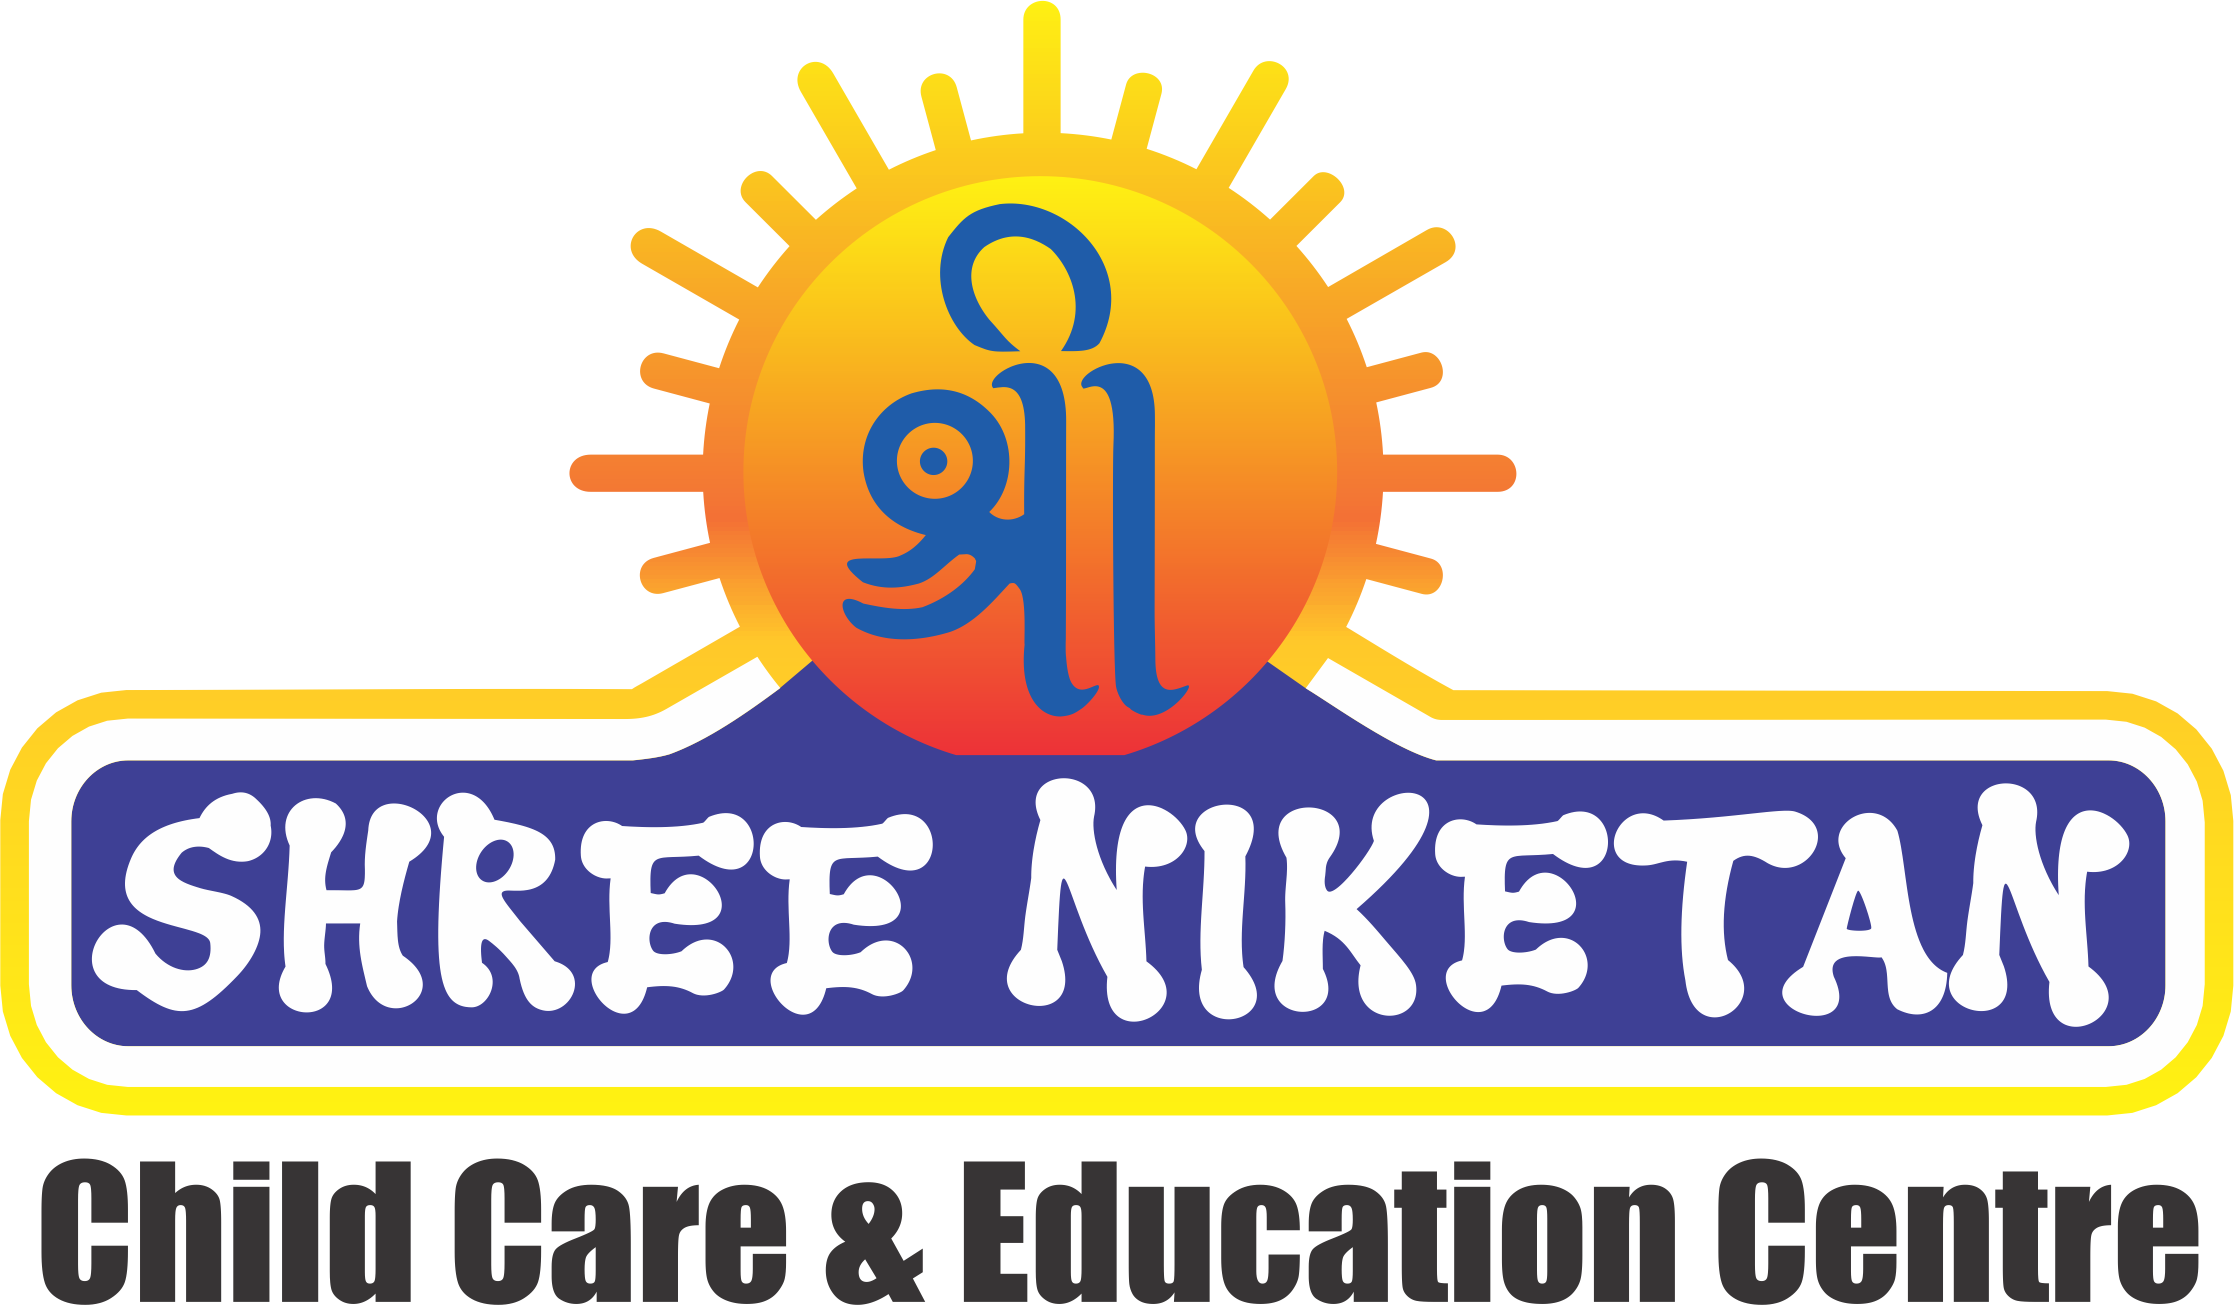 ShreeNiketan Childcare & Education Centre